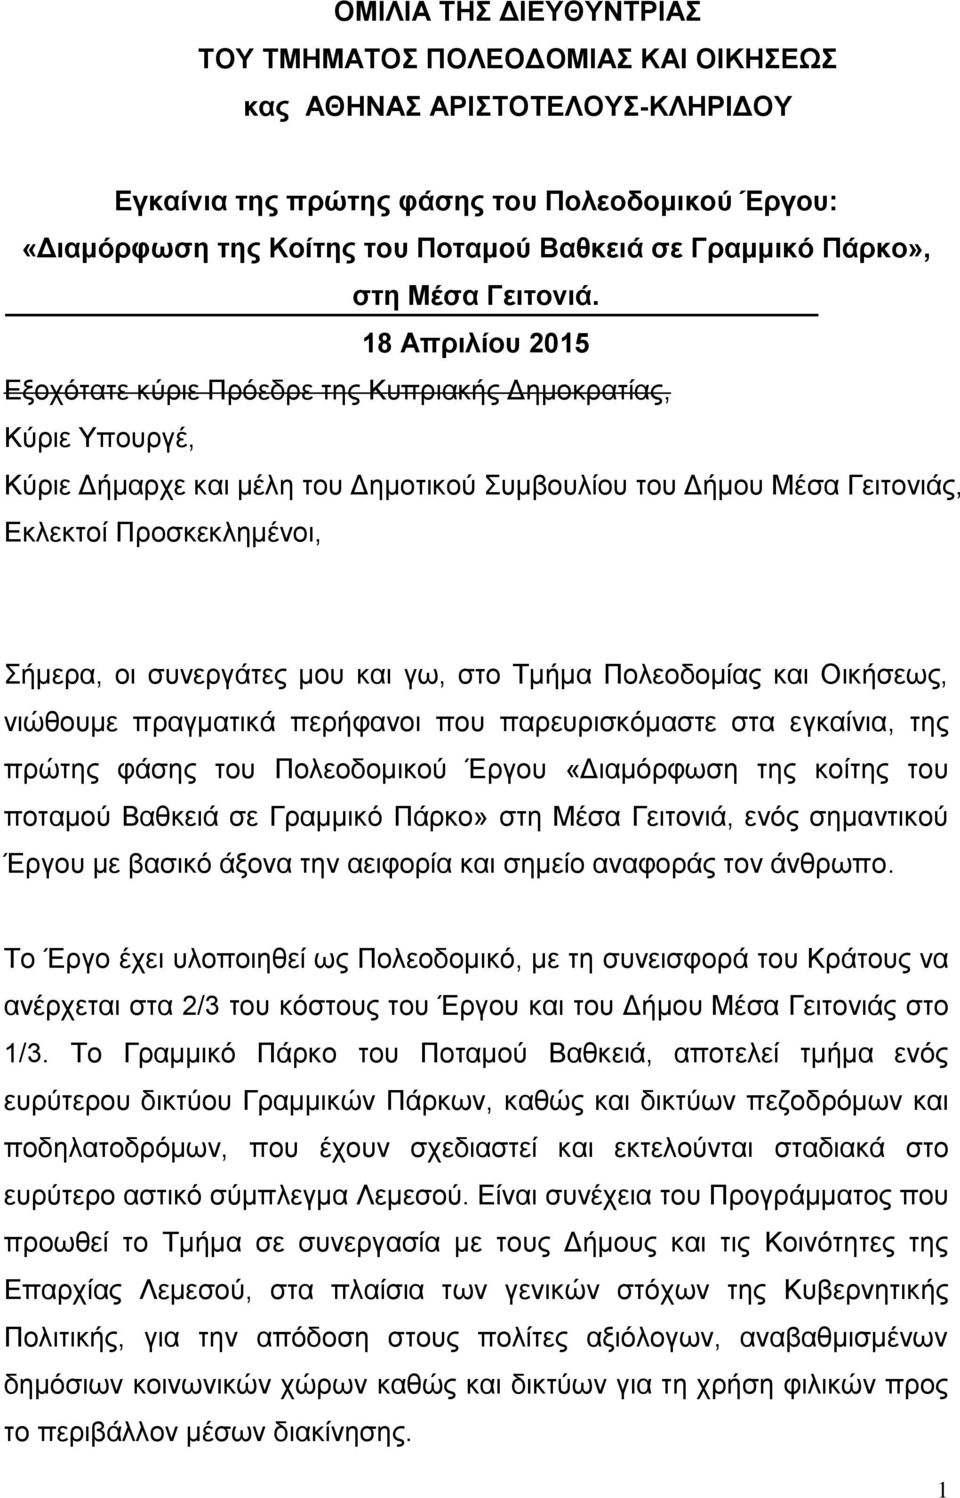 18 Απριλίου 2015 Εξοχότατε κύριε Πρόεδρε της Κυπριακής Δημοκρατίας, Κύριε Υπουργέ, Κύριε Δήμαρχε και μέλη του Δημοτικού Συμβουλίου του Δήμου Μέσα Γειτονιάς, Εκλεκτοί Προσκεκλημένοι, Σήμερα, οι